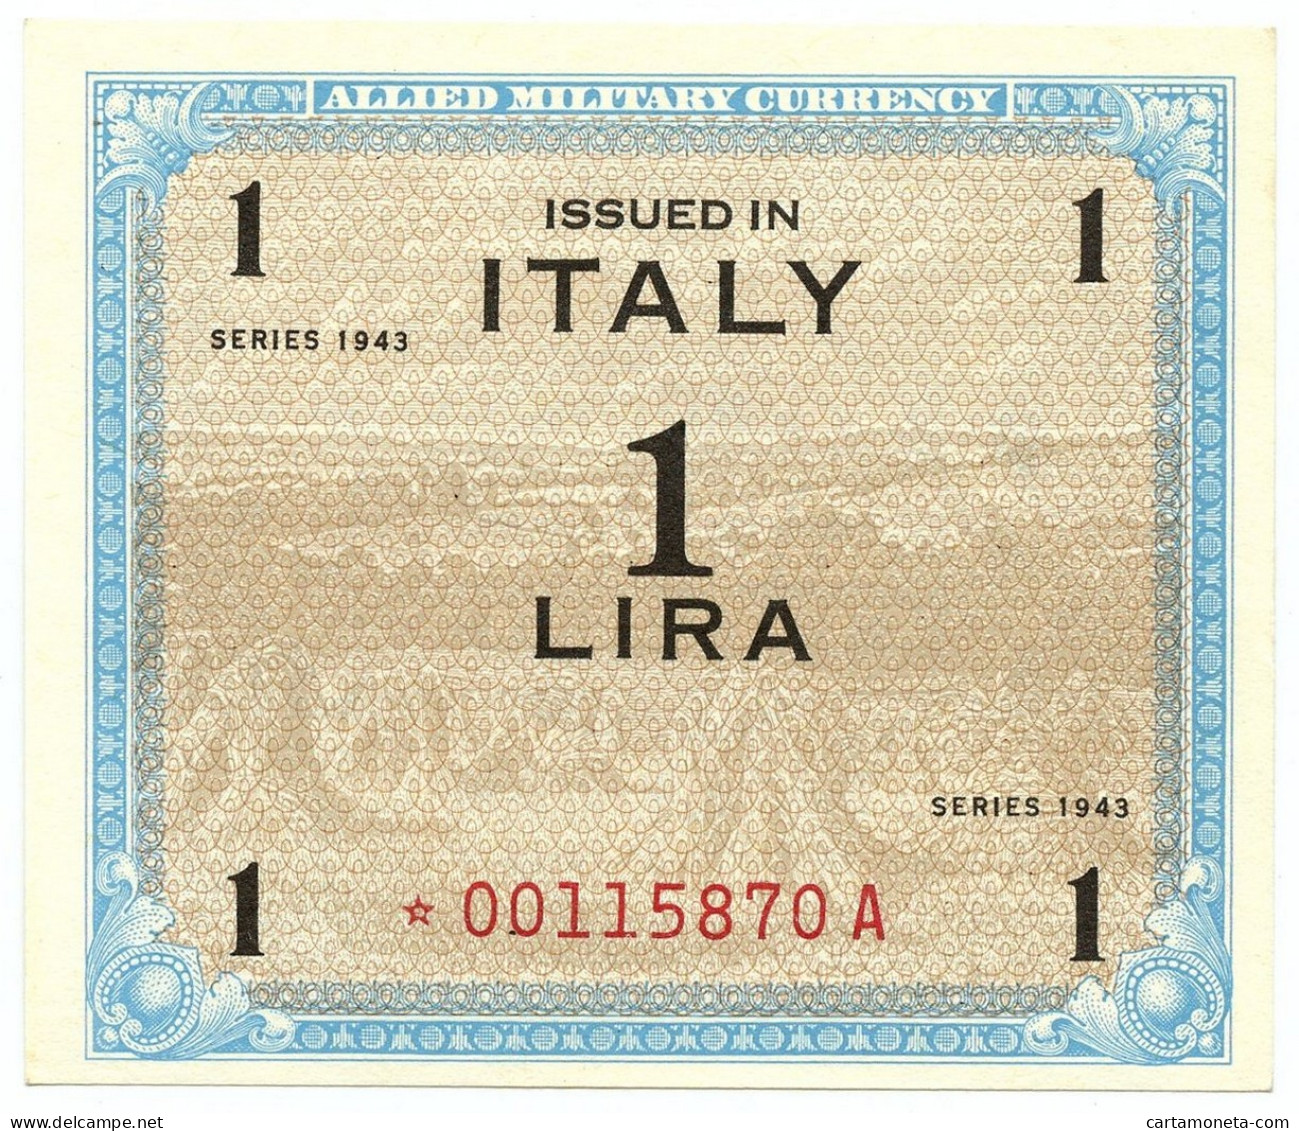 1 LIRA OCCUPAZIONE AMERICANA IN ITALIA MONOLINGUA ASTERISCO 1943 QFDS - Allied Occupation WWII